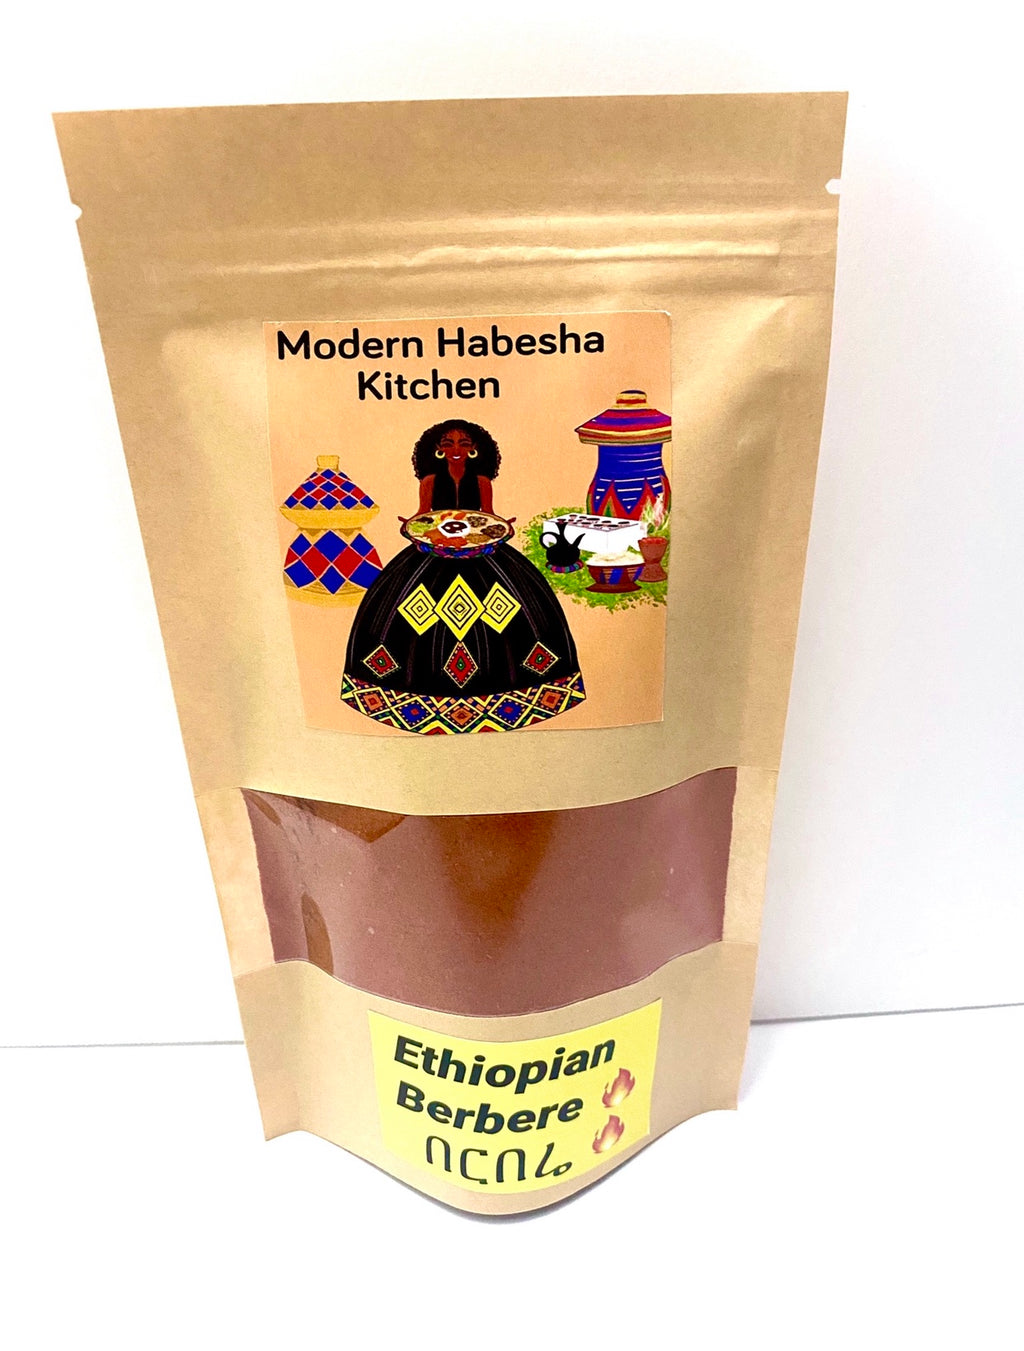 Authentic Ethiopian Berbere spice